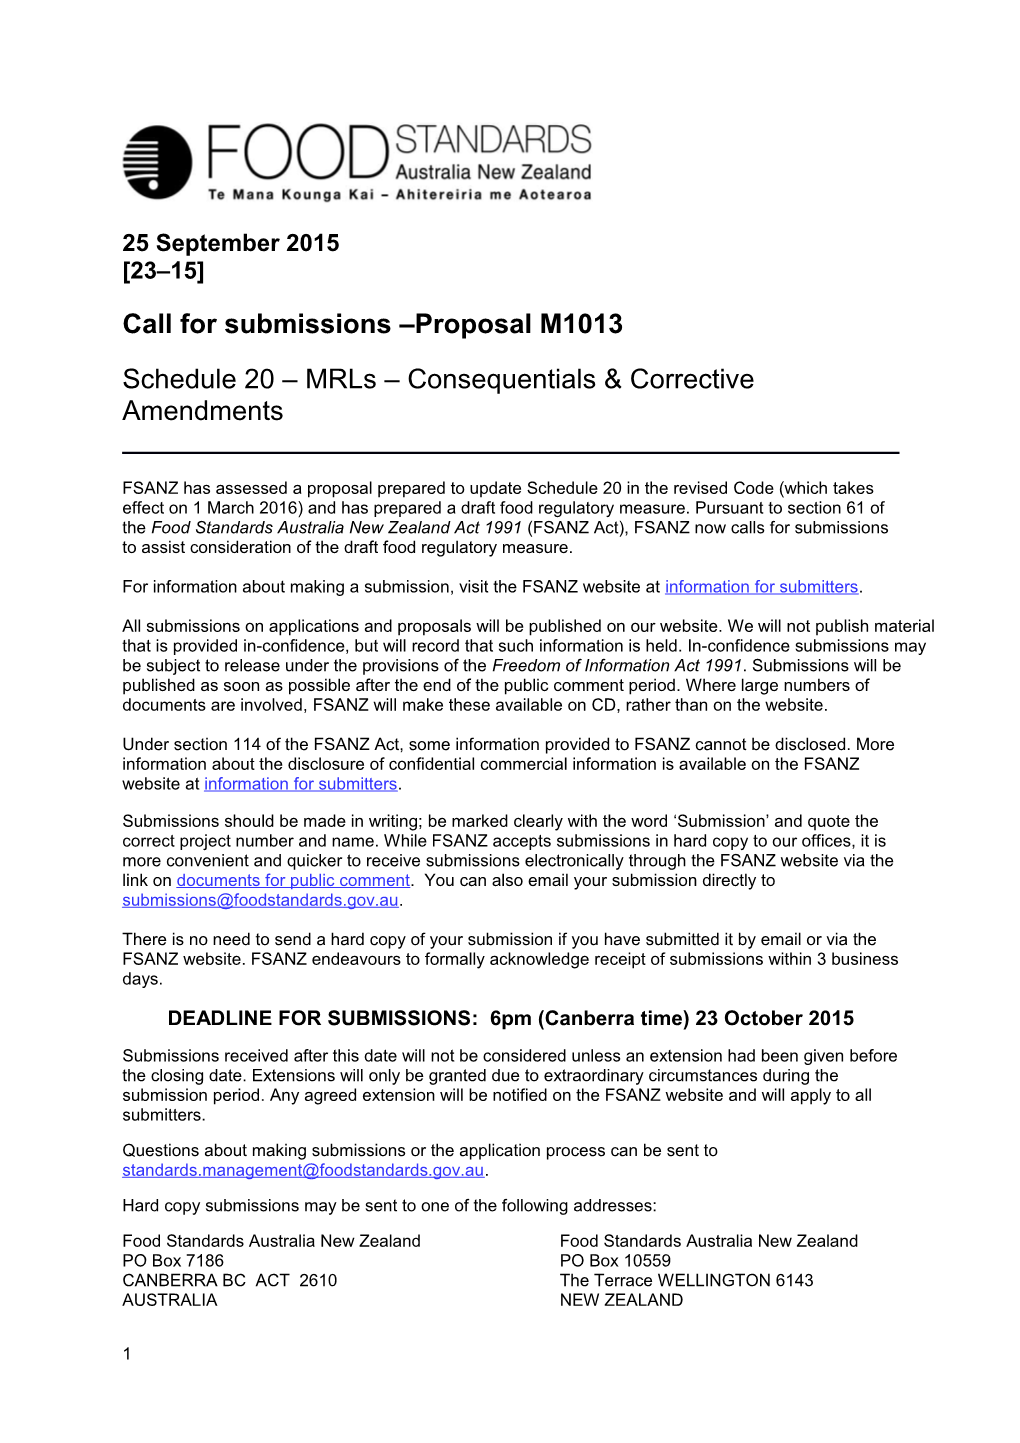 Schedule 20 Mrls Consequentials & Corrective Amendments